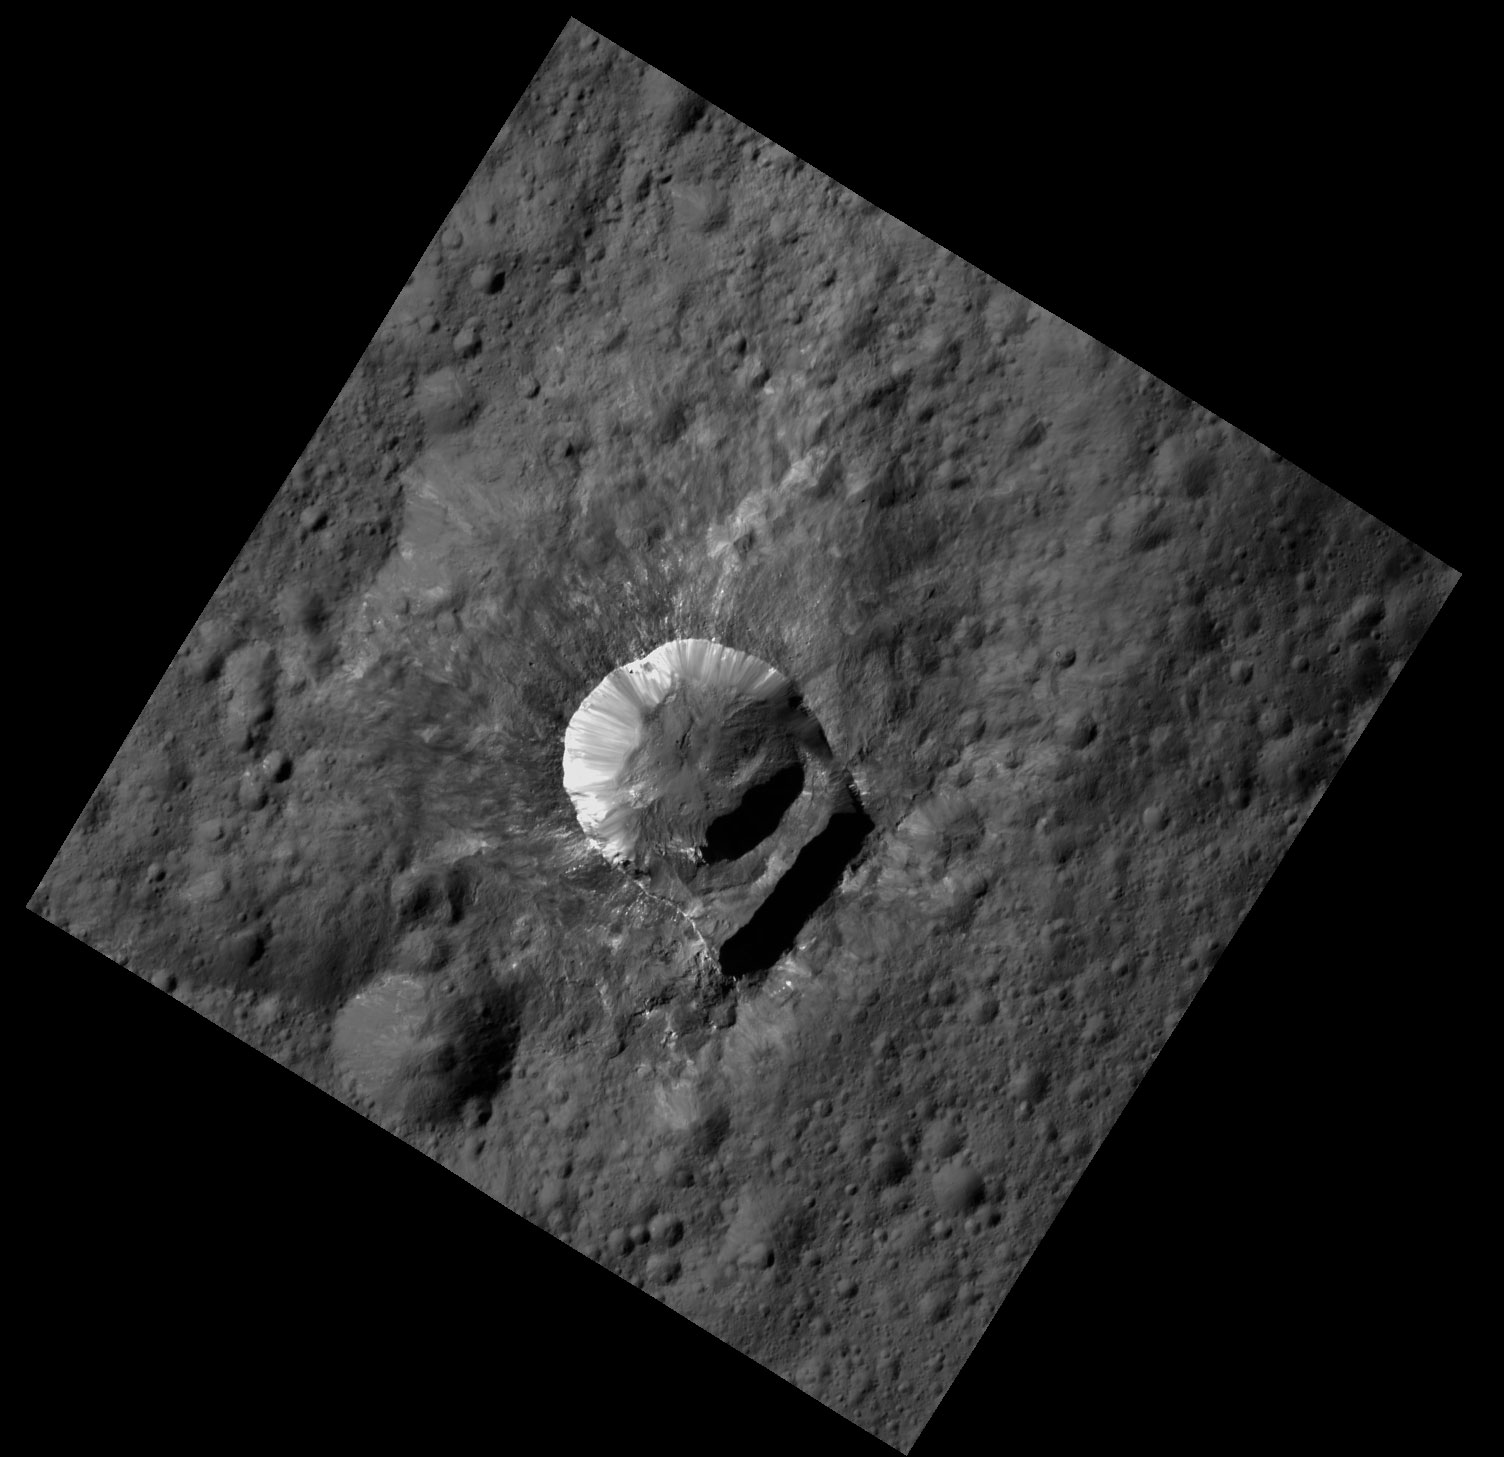 Oxo krateri. [NASA/JPL-Caltech/UCLA/MPS/DLR/IDA/PSI]